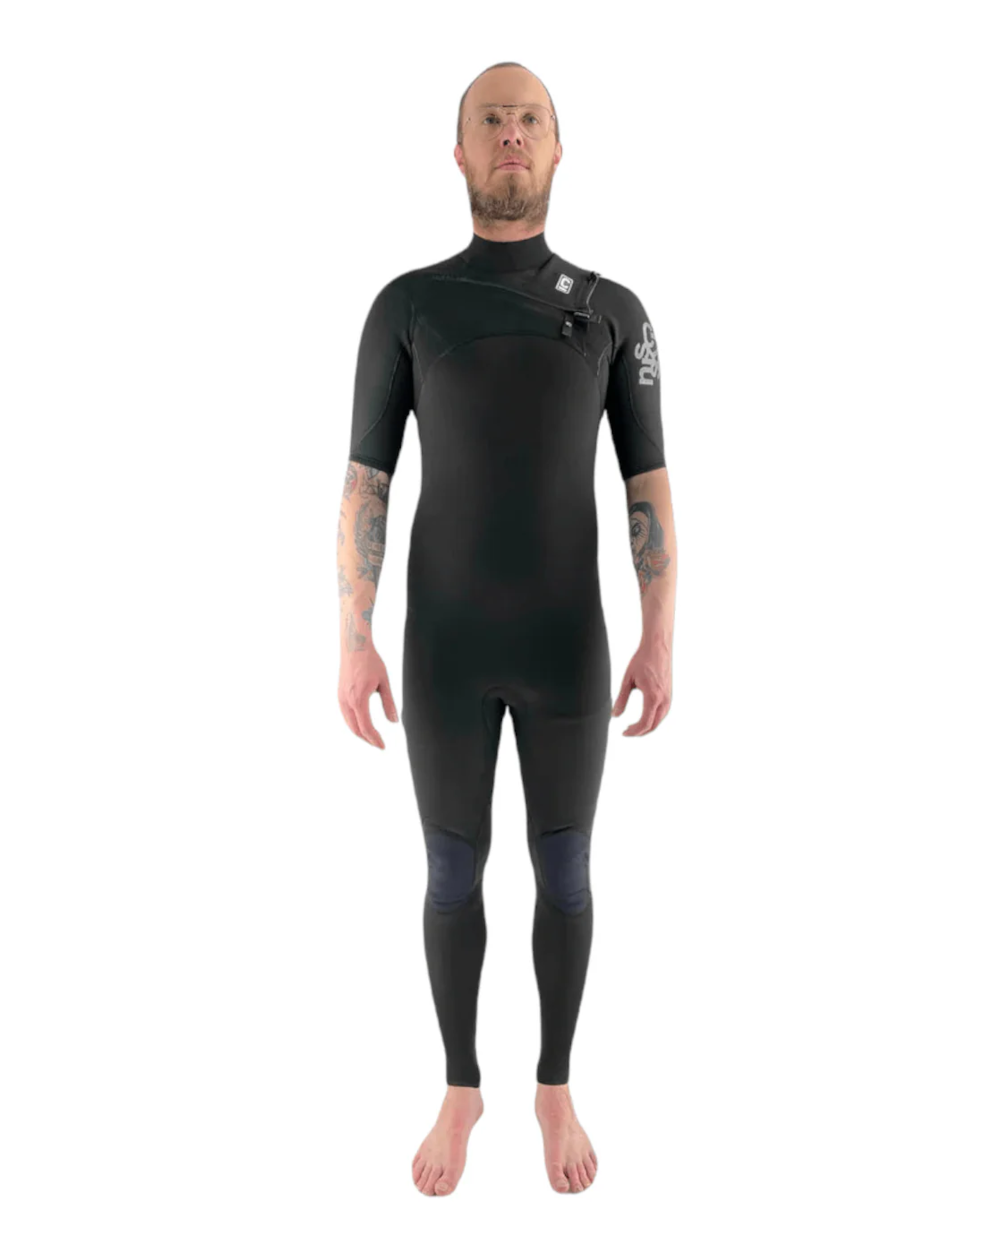 Mens Short Sleeve Steamer Wetsuit - Melbourne Surfboard Shop